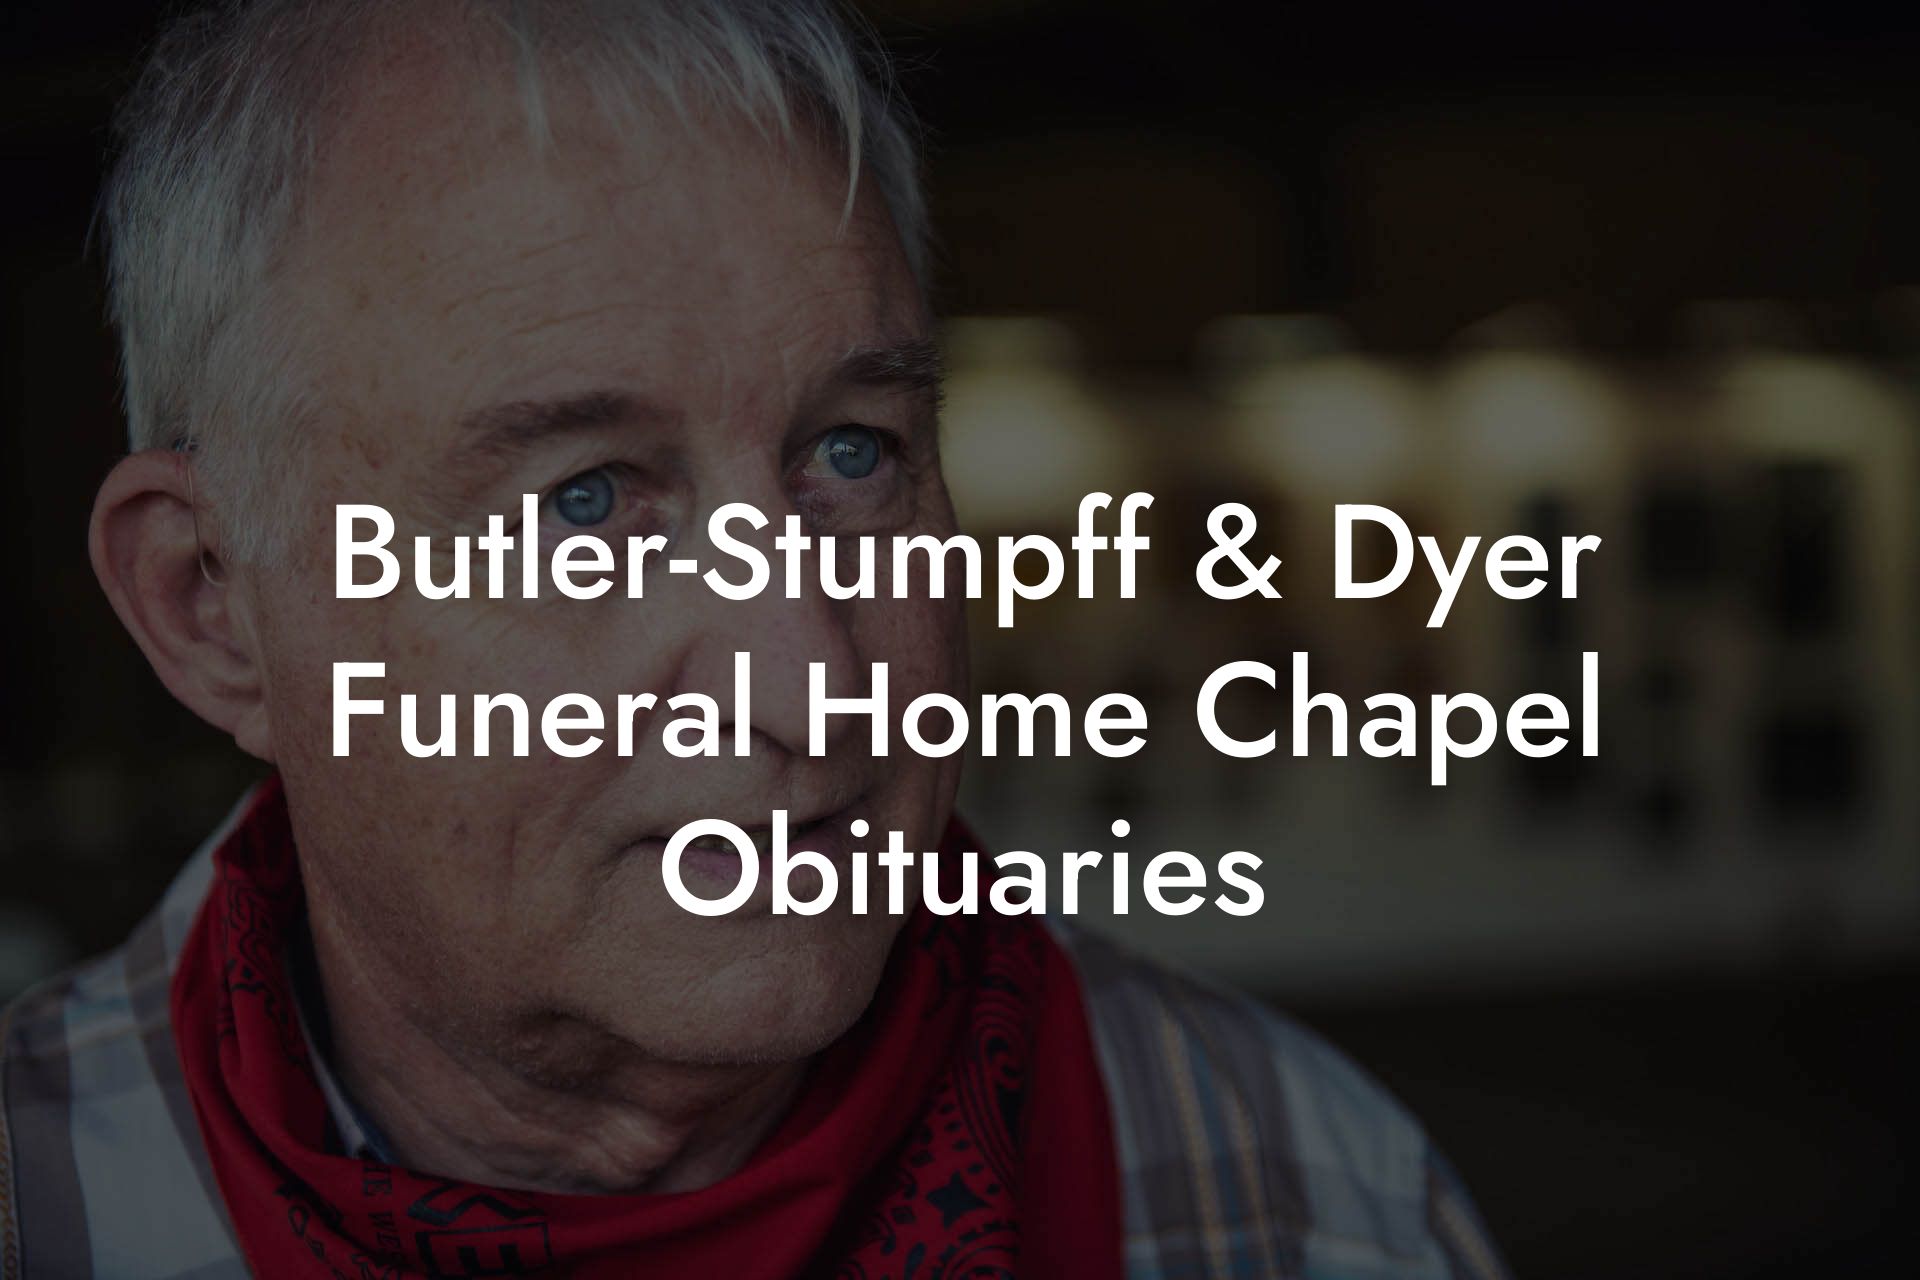 Butler-Stumpff & Dyer Funeral Home Chapel Obituaries